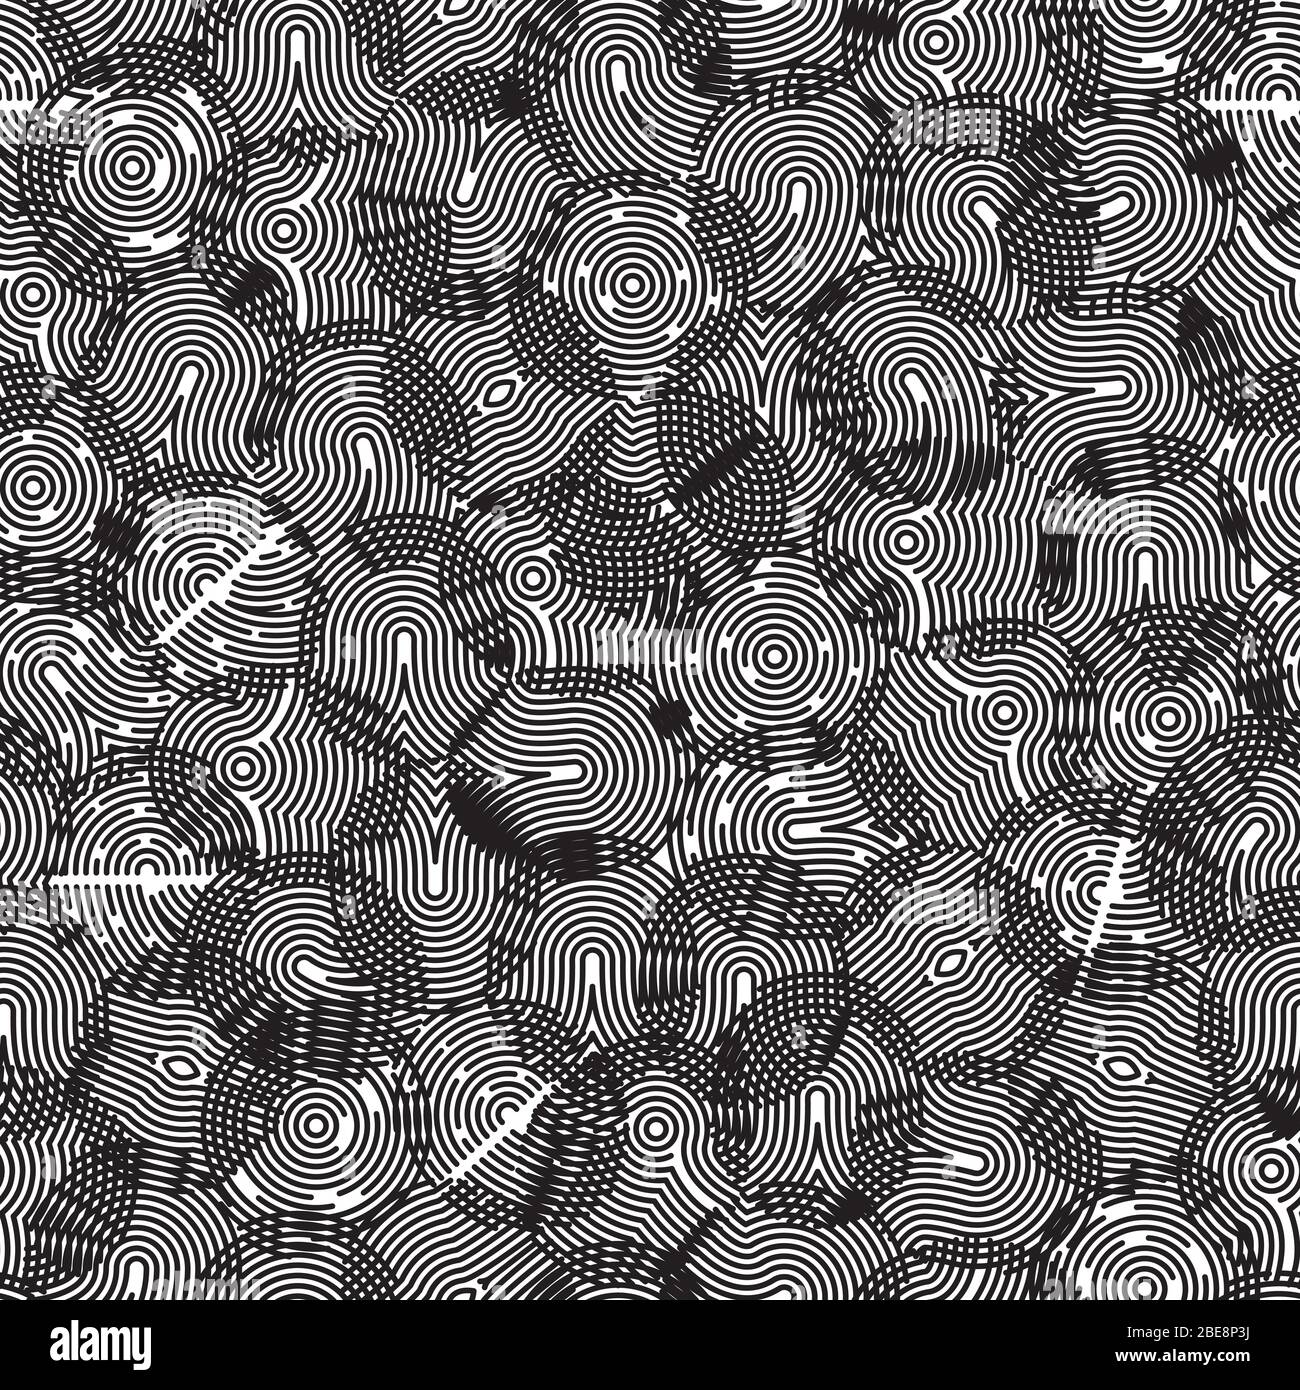 Abstract black fingerprints seamless pattern. Background fingerprint line, vector illustration Stock Vector